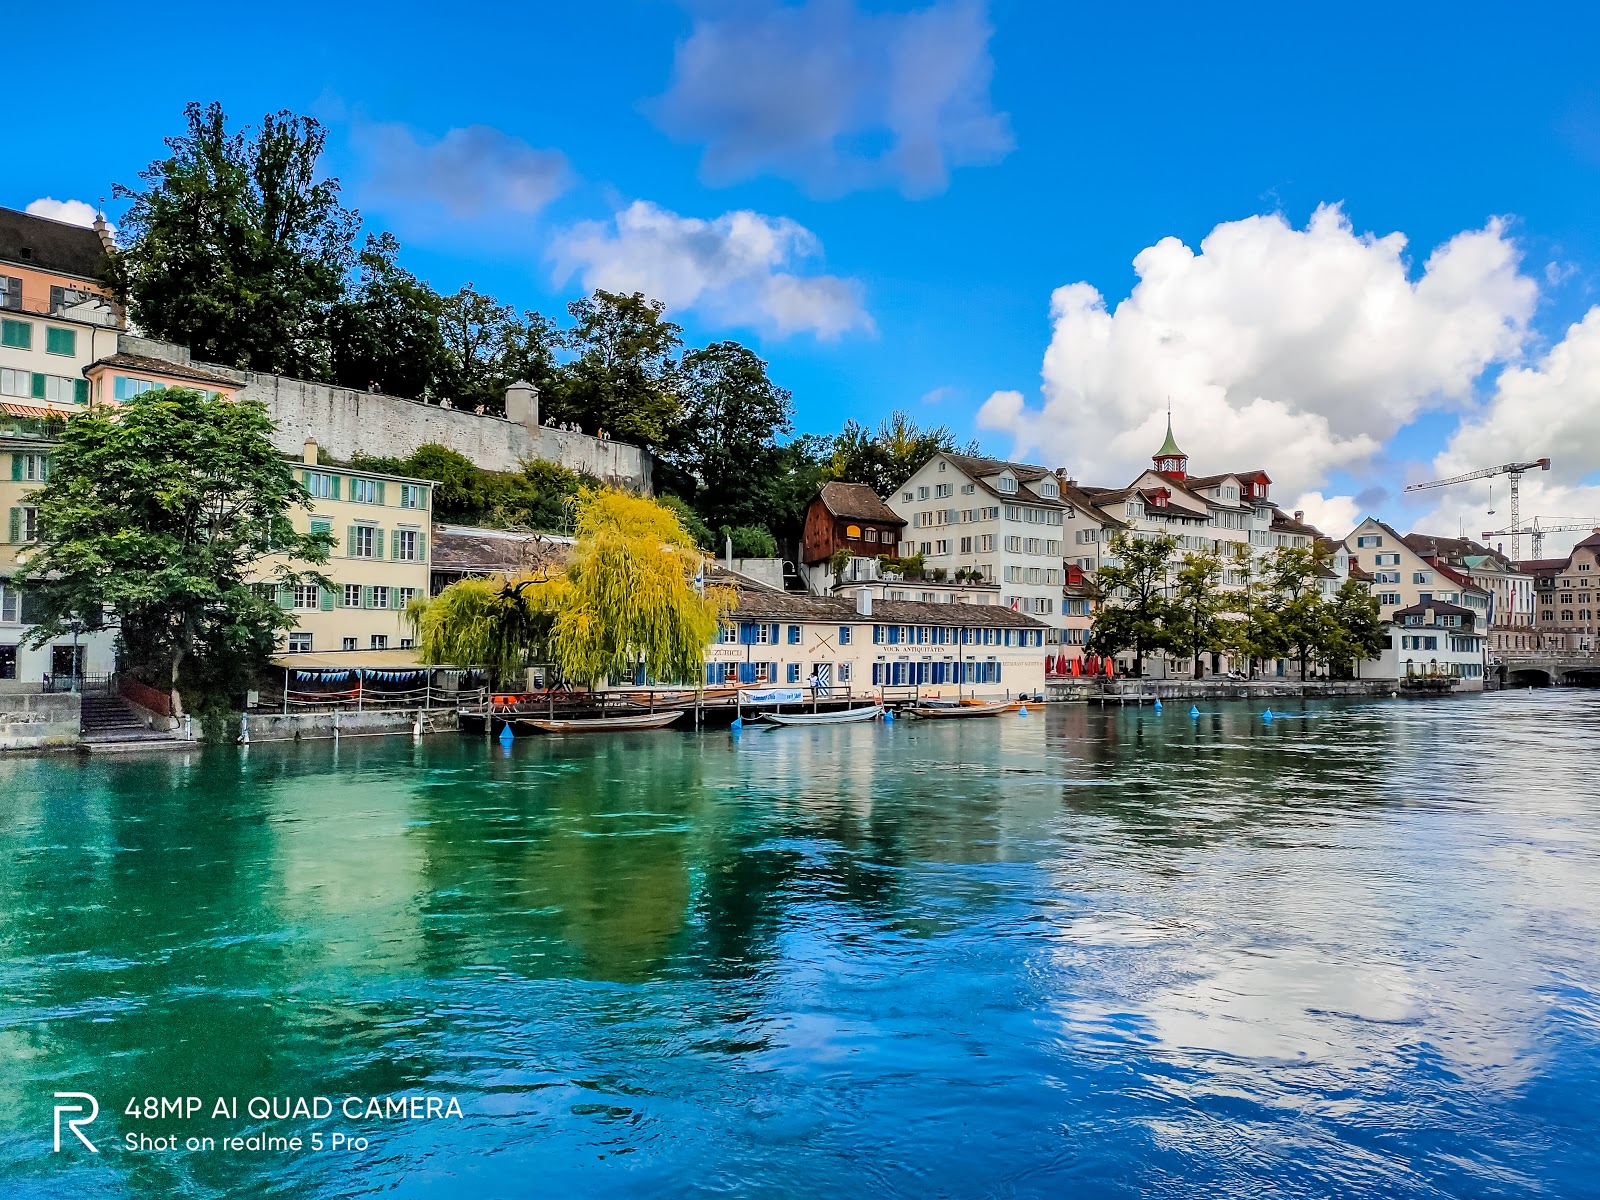 Trải nghiệm 1 ngày thơ mộng bên bờ Limmat, Zurich – thành phố đẹp nhất Thụy Sĩ